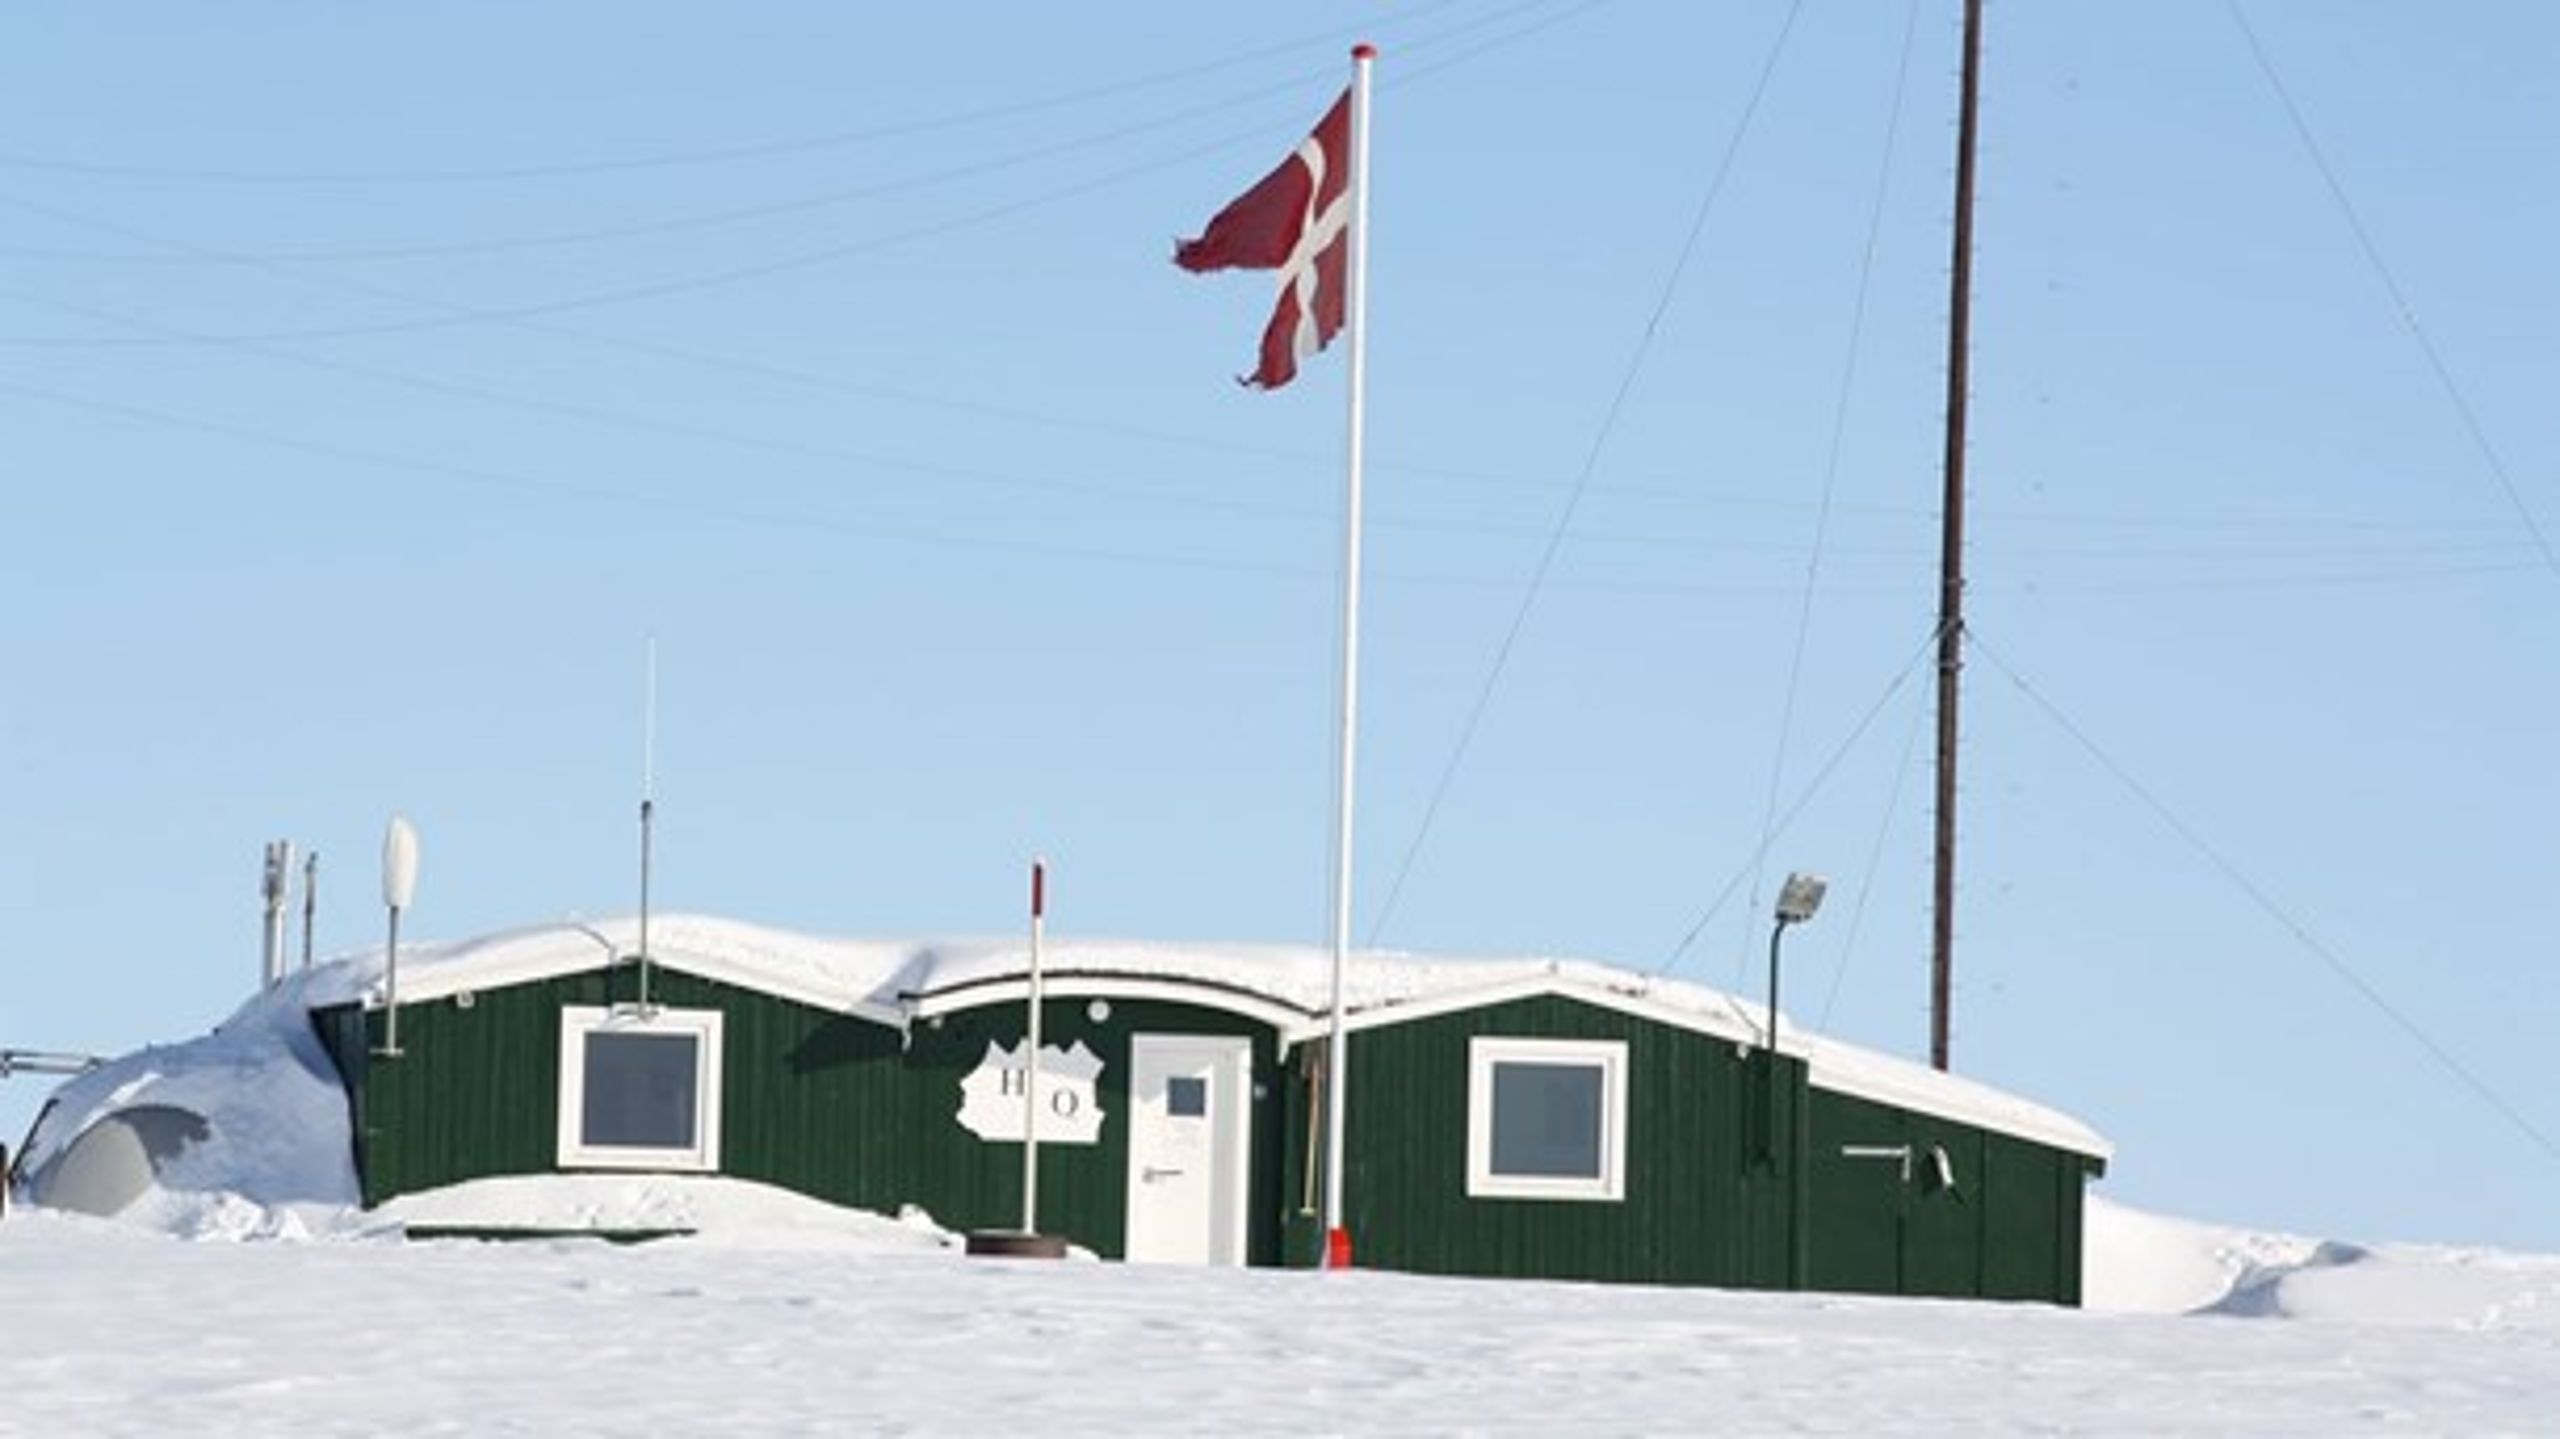 Station Nord er den permanente beboelse, der ligger næstnærmest Nordpolen.